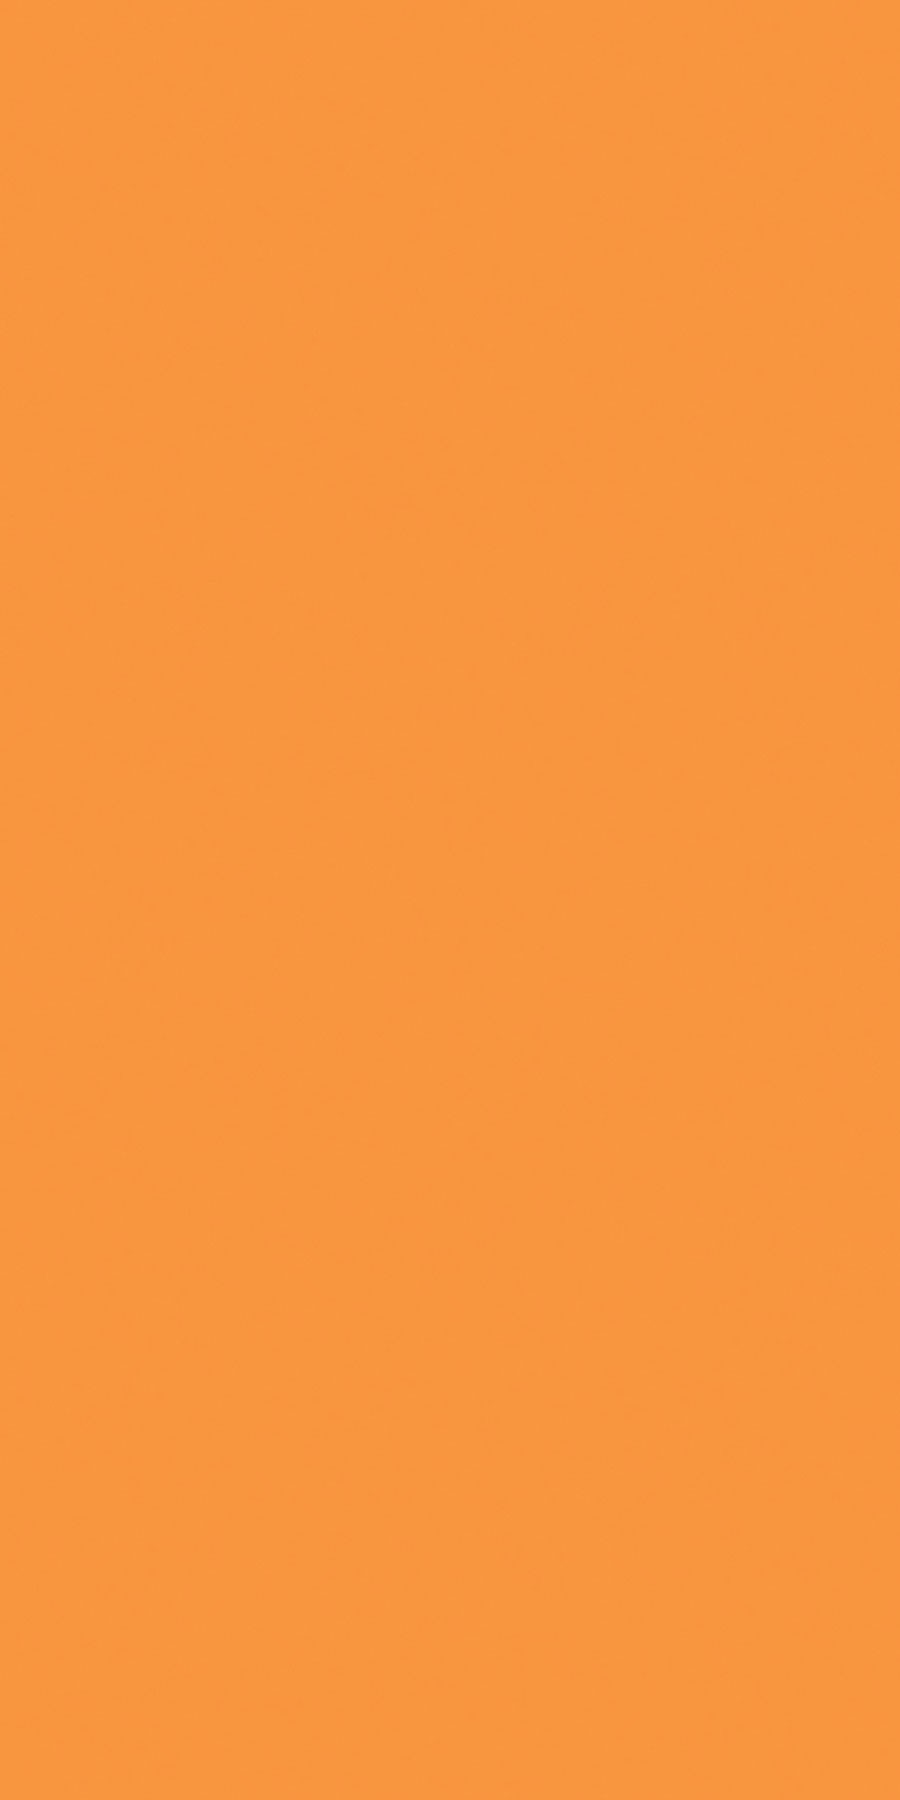 Buy Light Orange Laminates with Suede (SUD) finish in India - Greenlam  Laminates